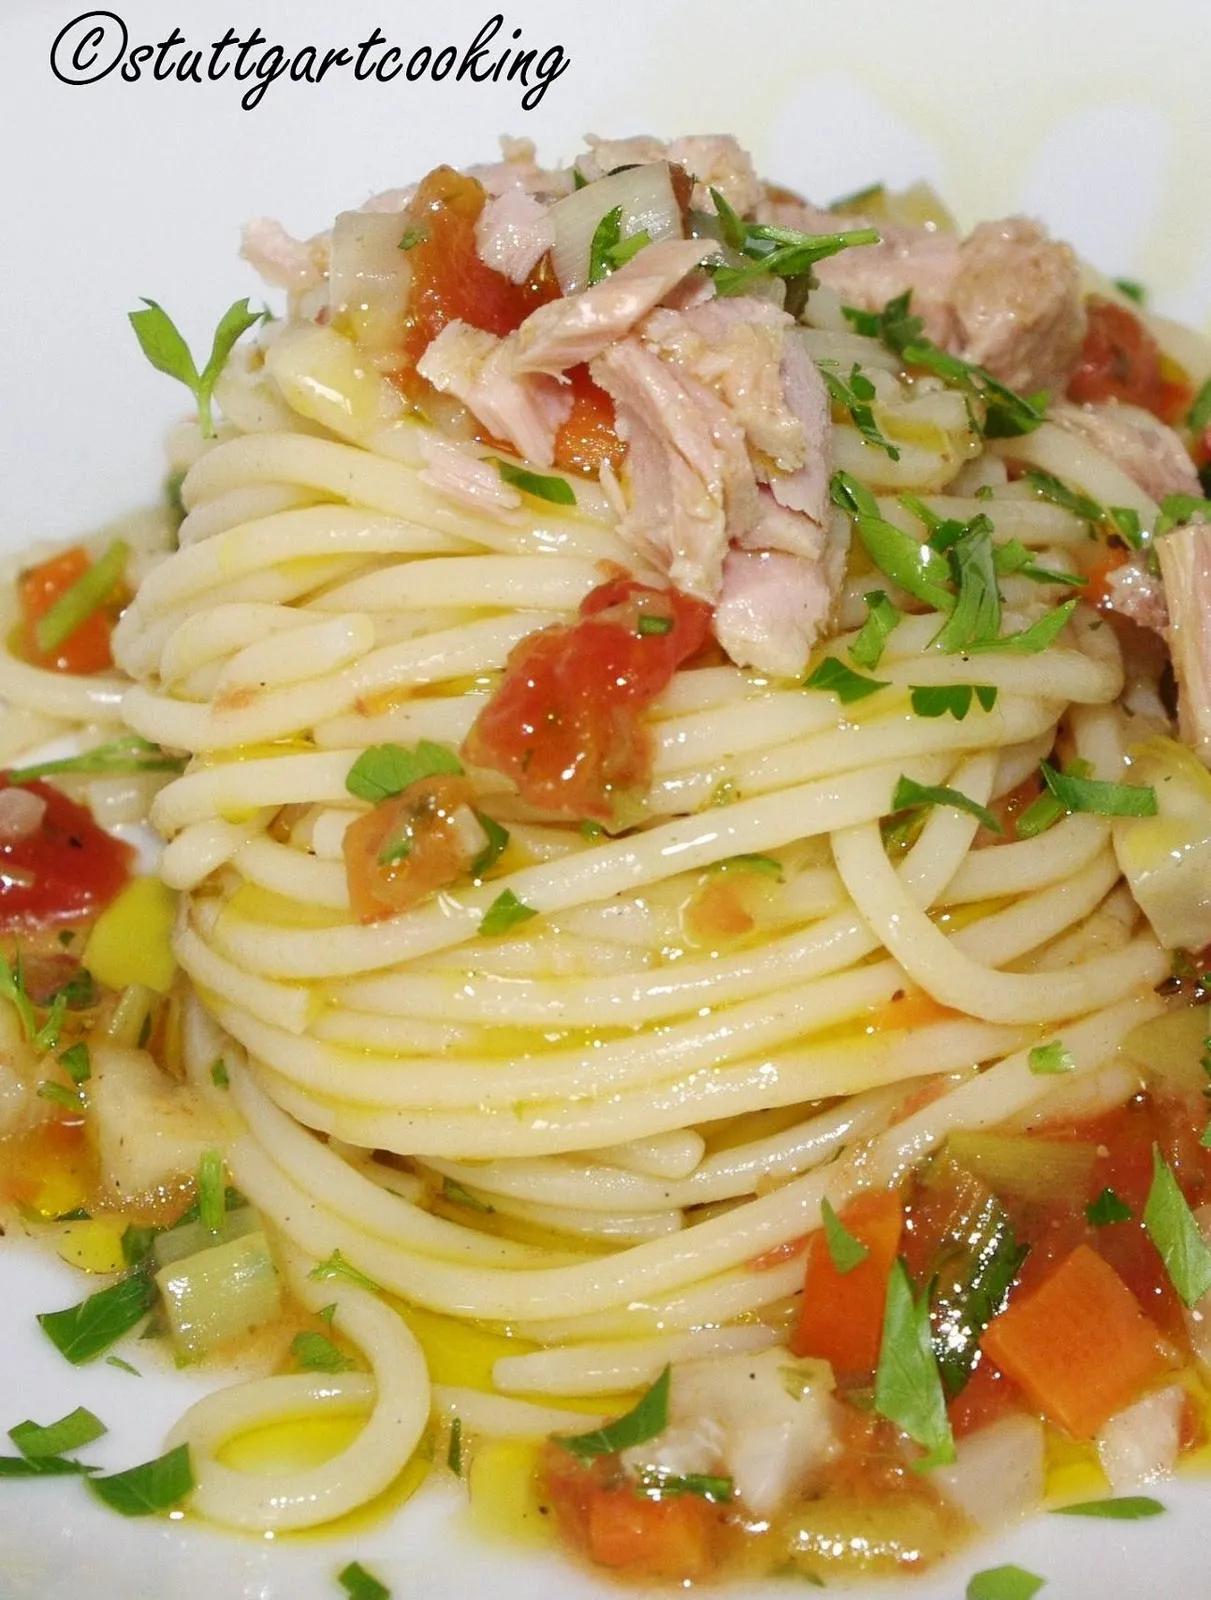 stuttgartcooking: Spaghetti mit Thunfisch und Gemüse